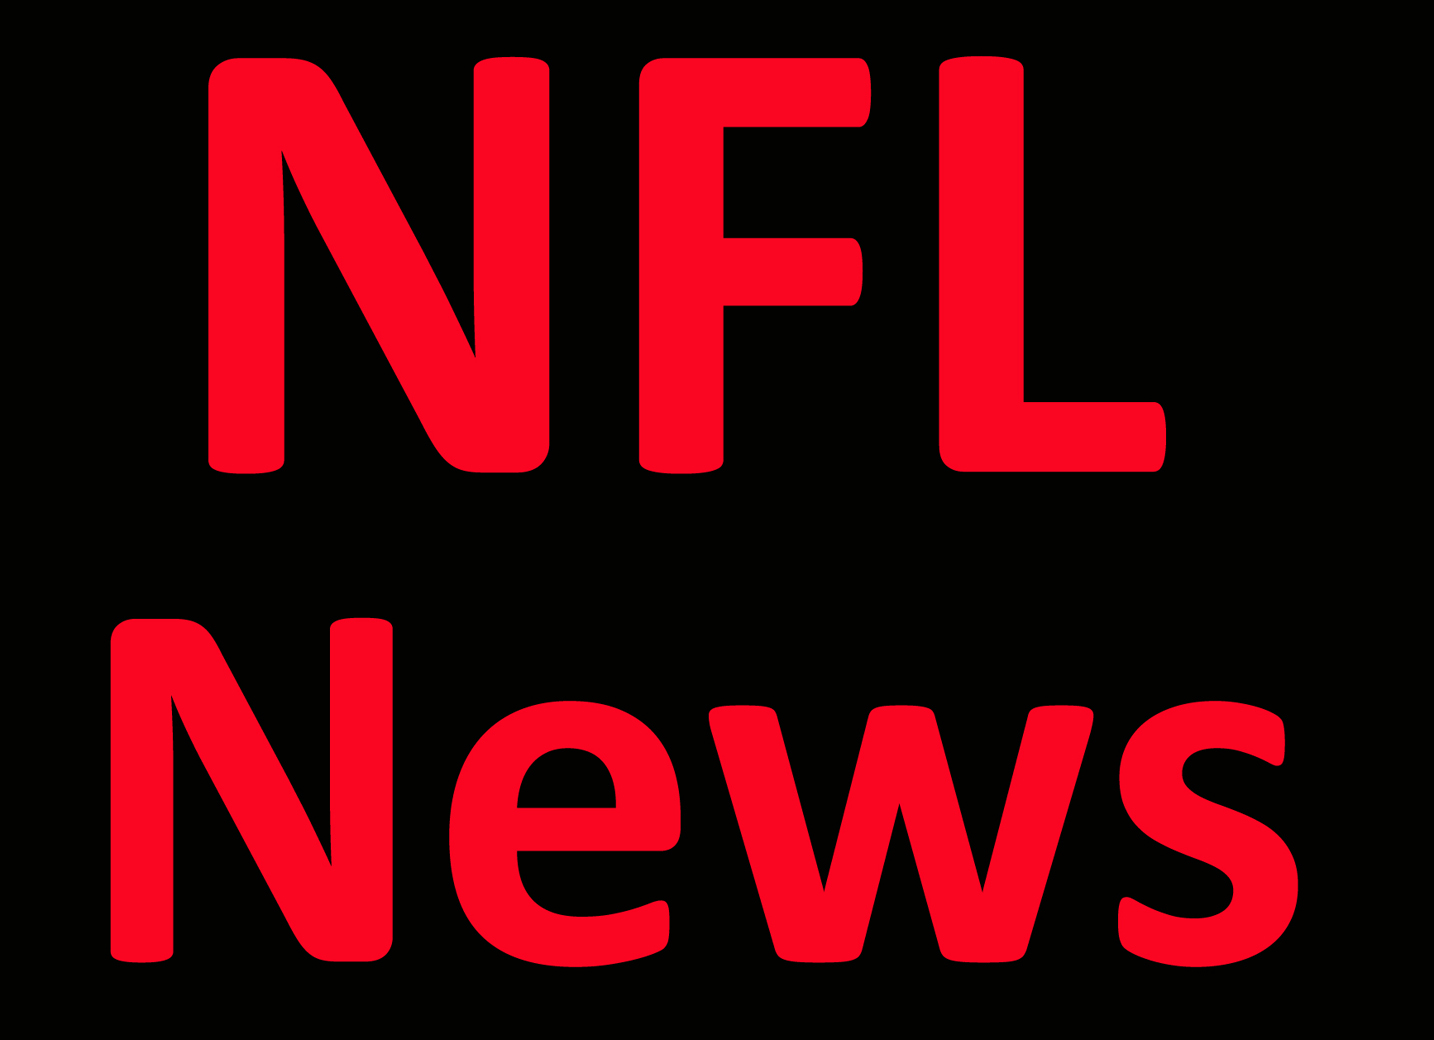 NFL News: ‘You are a plum fool’: Arizona Cardinals teammates defend QB Per Report